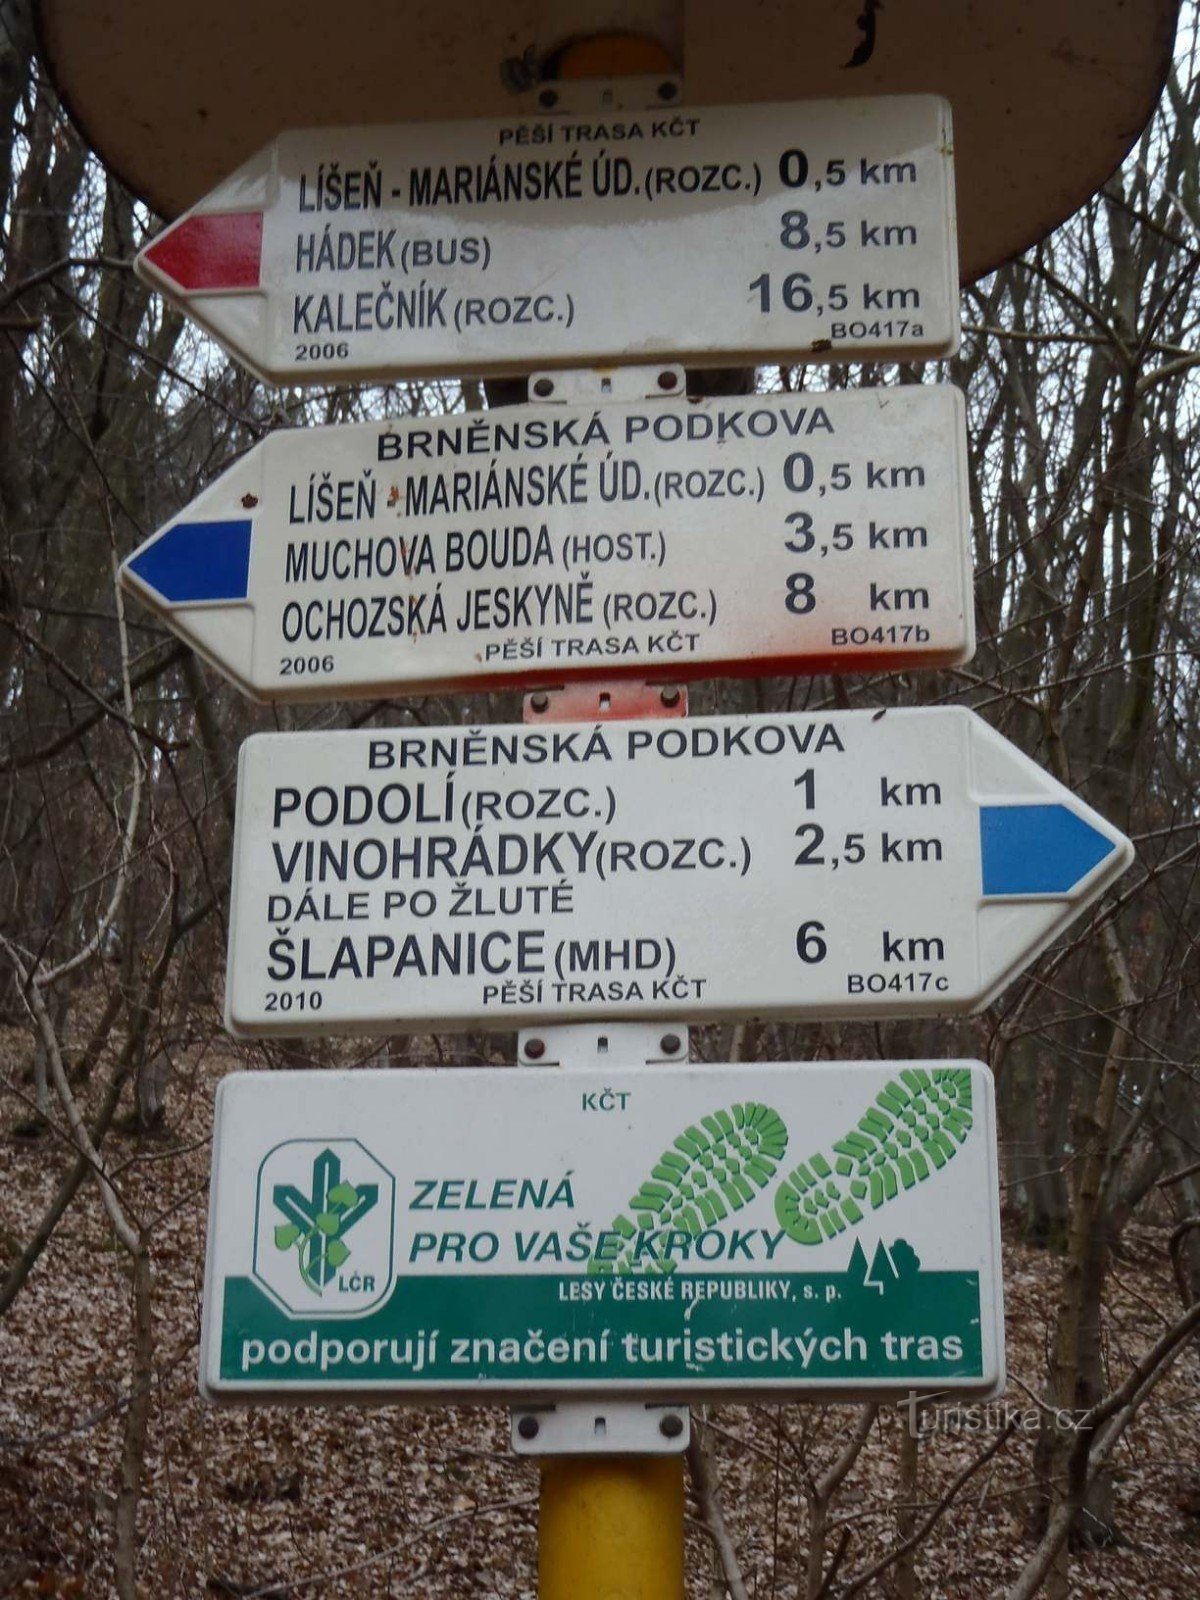 Turistskylt Brno Líšeň Mariánské údolí Kollektivtrafik - 6.2.2012 februari XNUMX